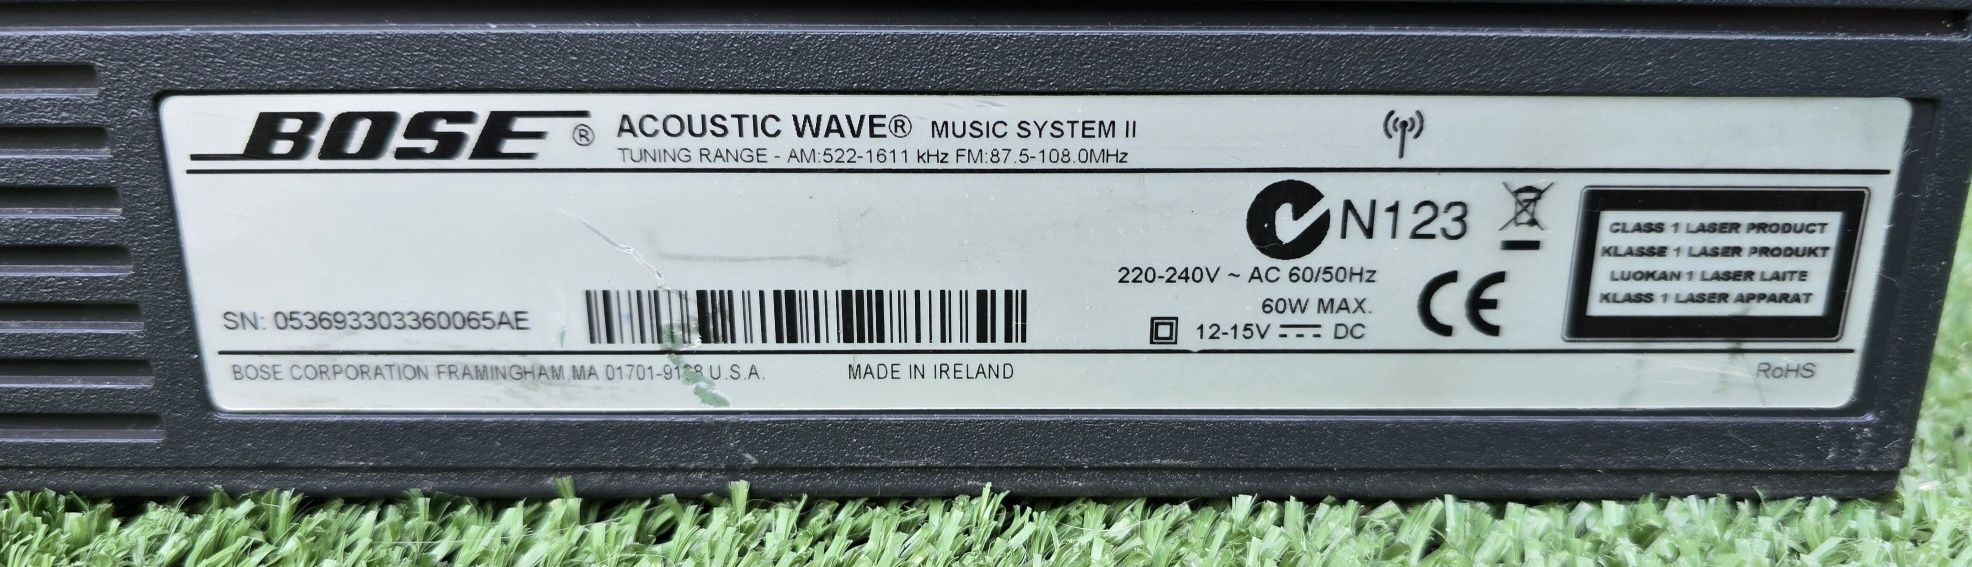 Bose Acoustic Wave